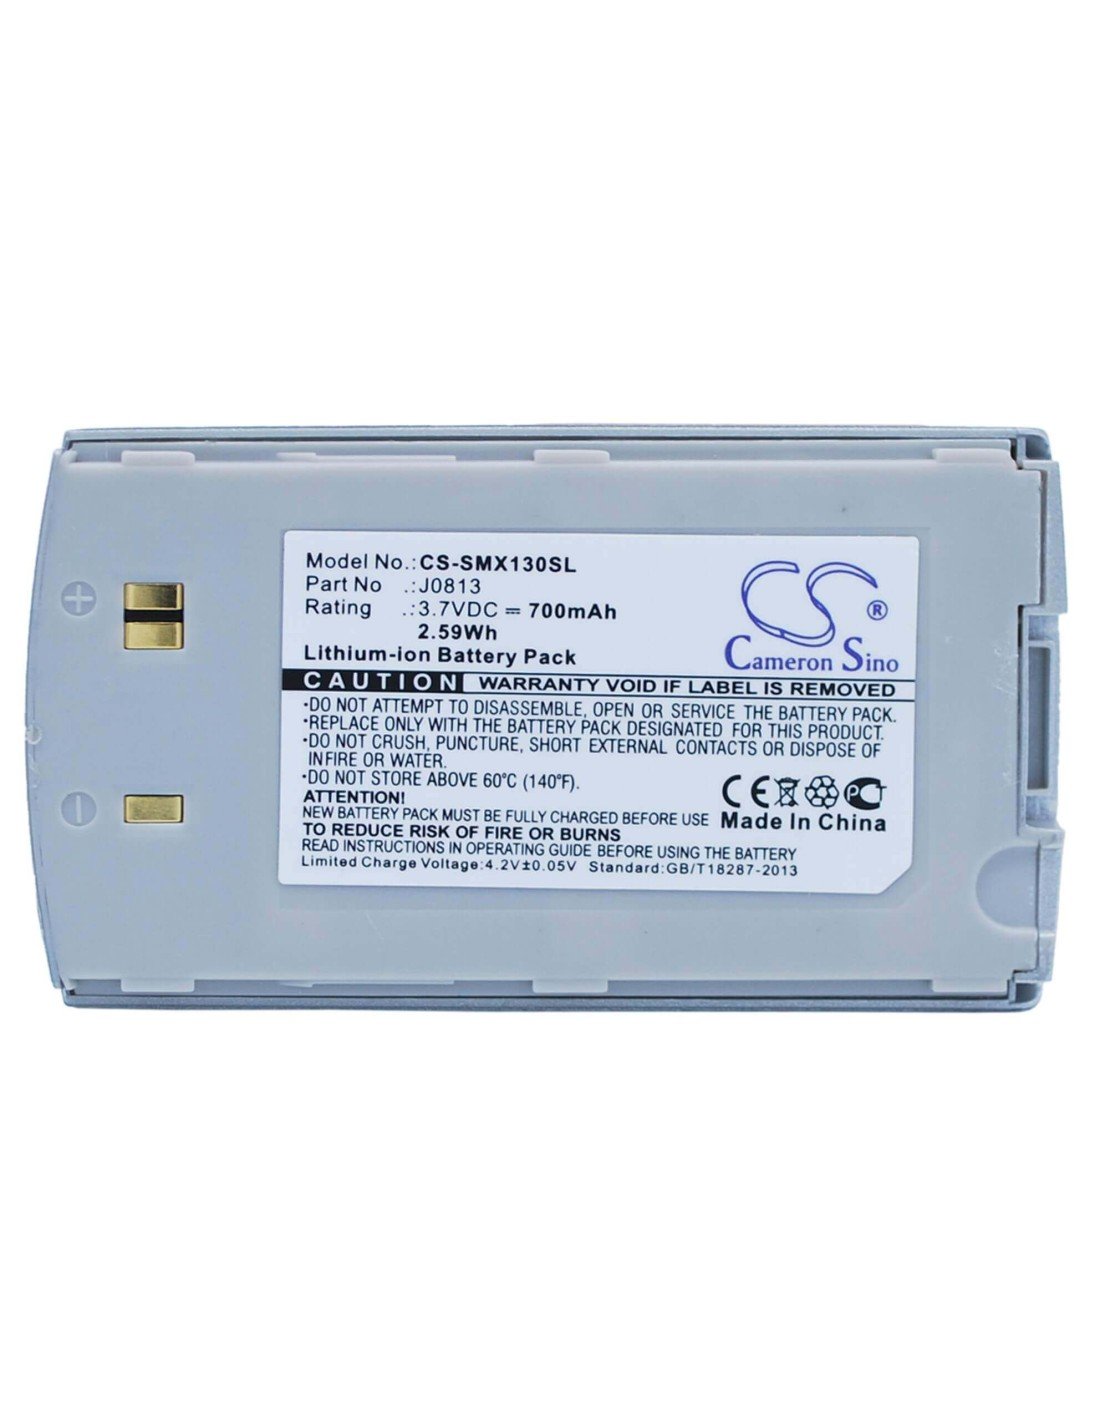 Battery for Samsung SCH-X120, SCH-X130, SGH-X120 3.7V, 700mAh - 2.59Wh